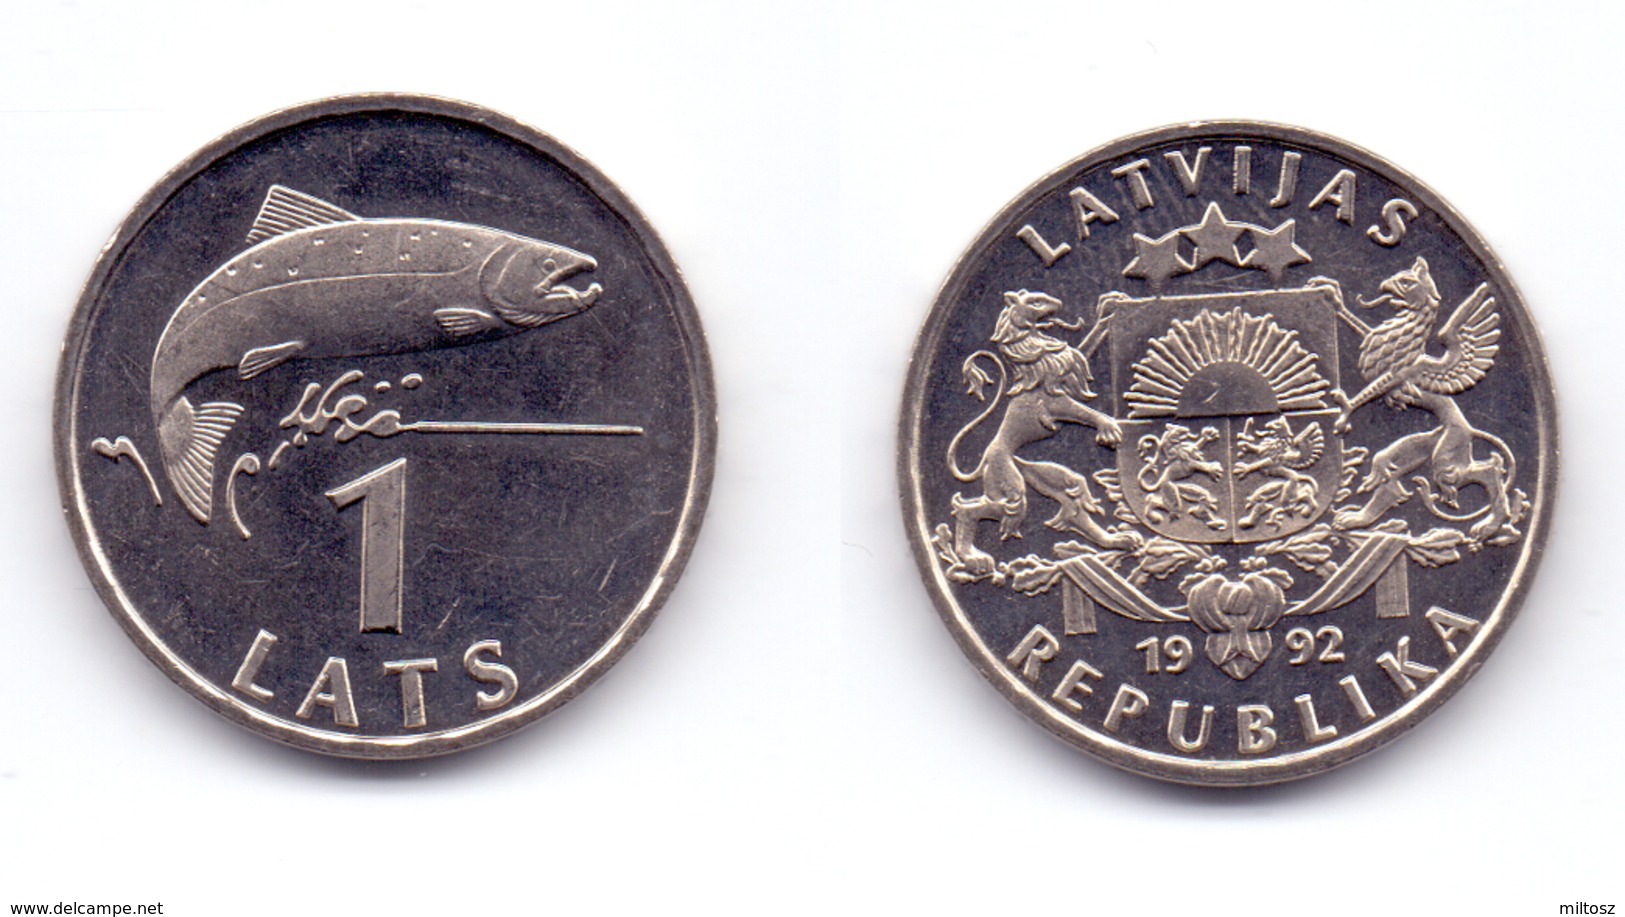 Latvia 1 Lats 1992 - Latvia